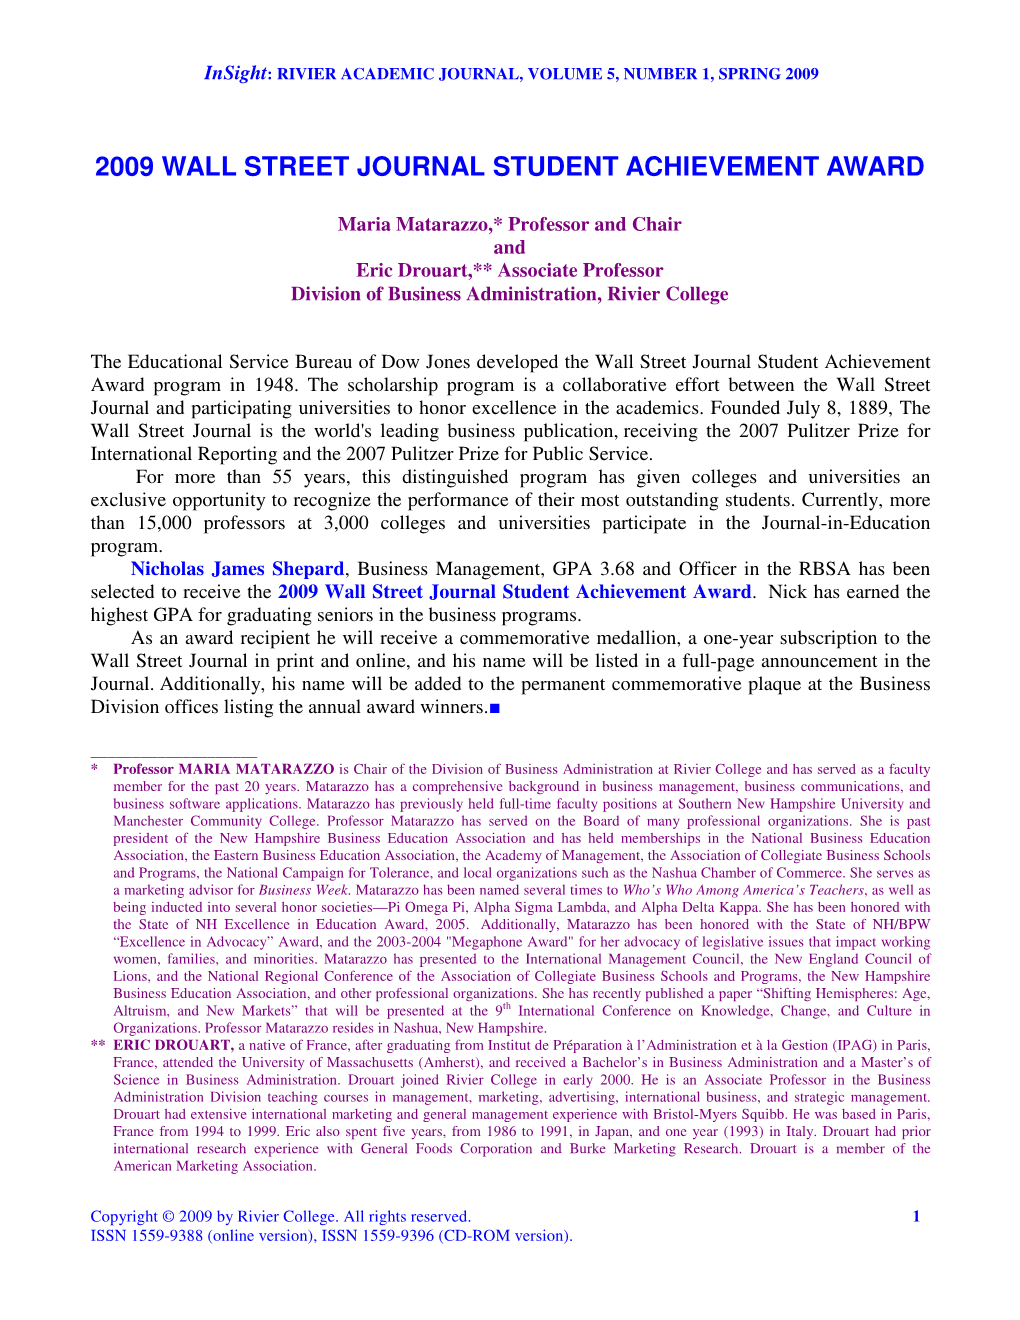 2009 Wall Street Journal Student Achievement Award